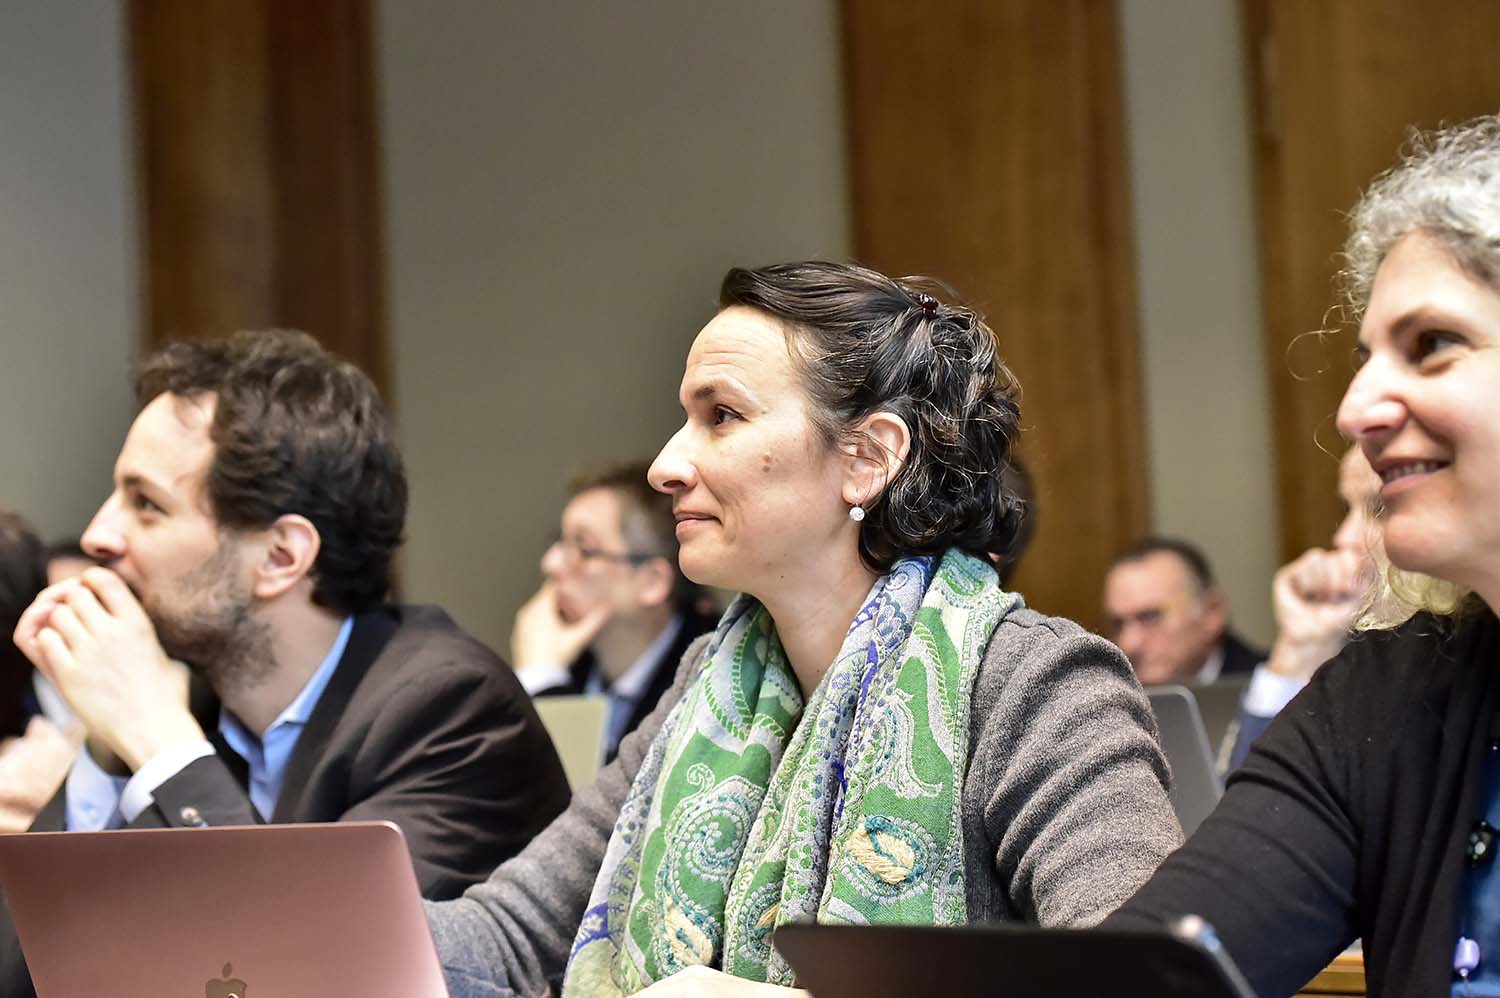 Le Grand Conseil a accepté le postulat "Pour un Plan climat valaisan" déposé par Céline Dessimoz (Les Verts).